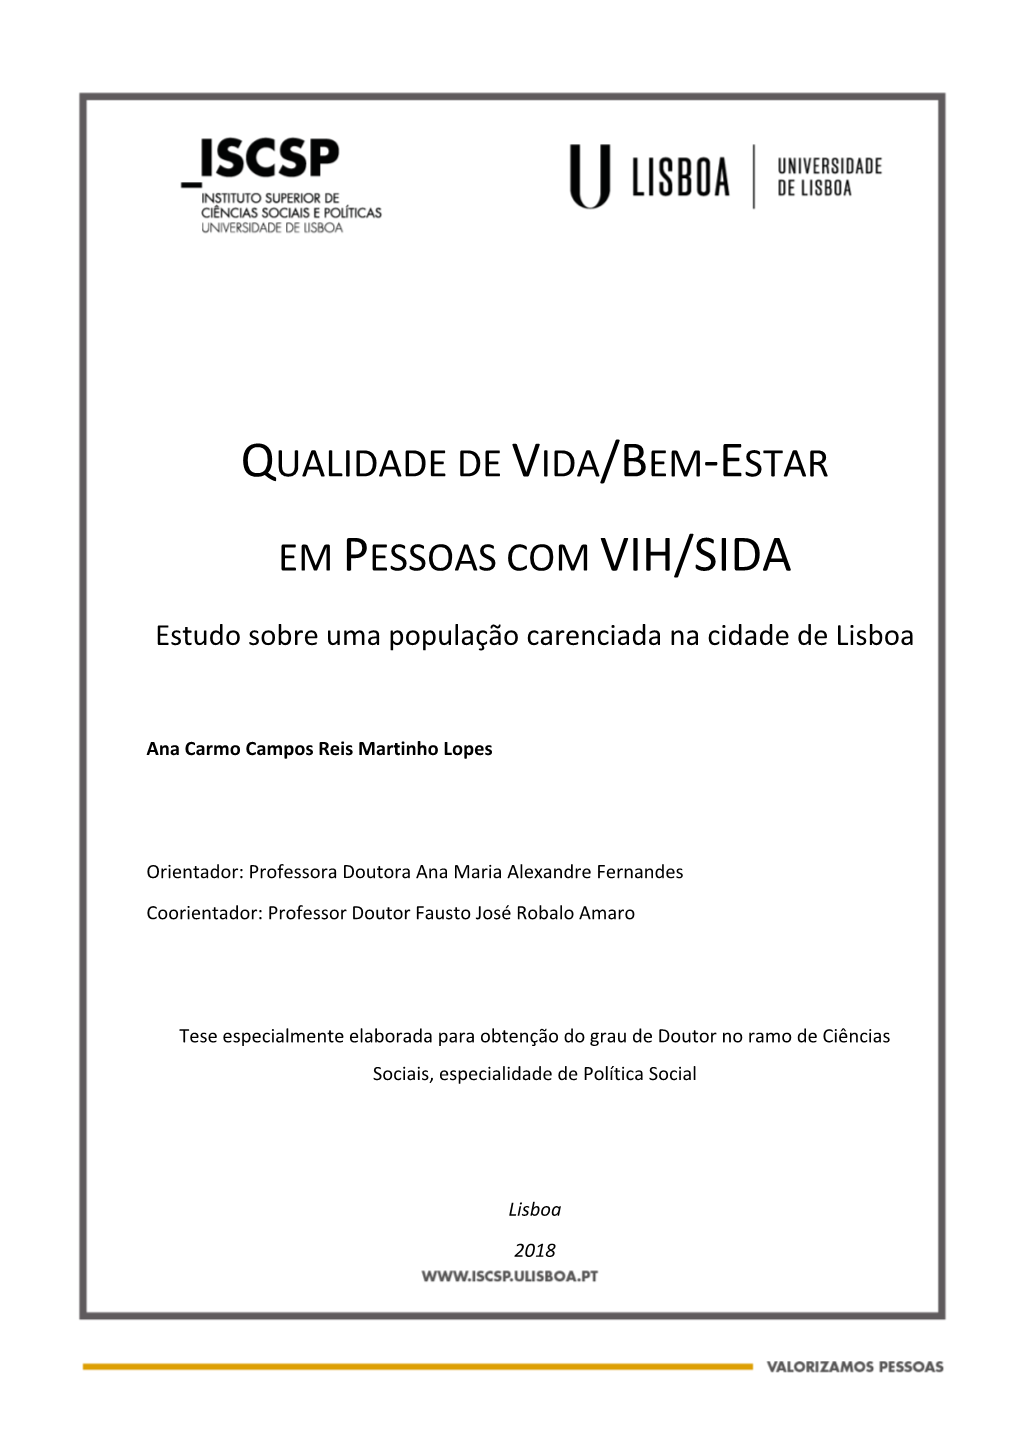 QUALIDADE DE VIDA/BEM-ESTAR EM PESSOAS COM VIH/SIDA - Estudo Sobre Uma População Carenciada Na Cidade De Lisboa